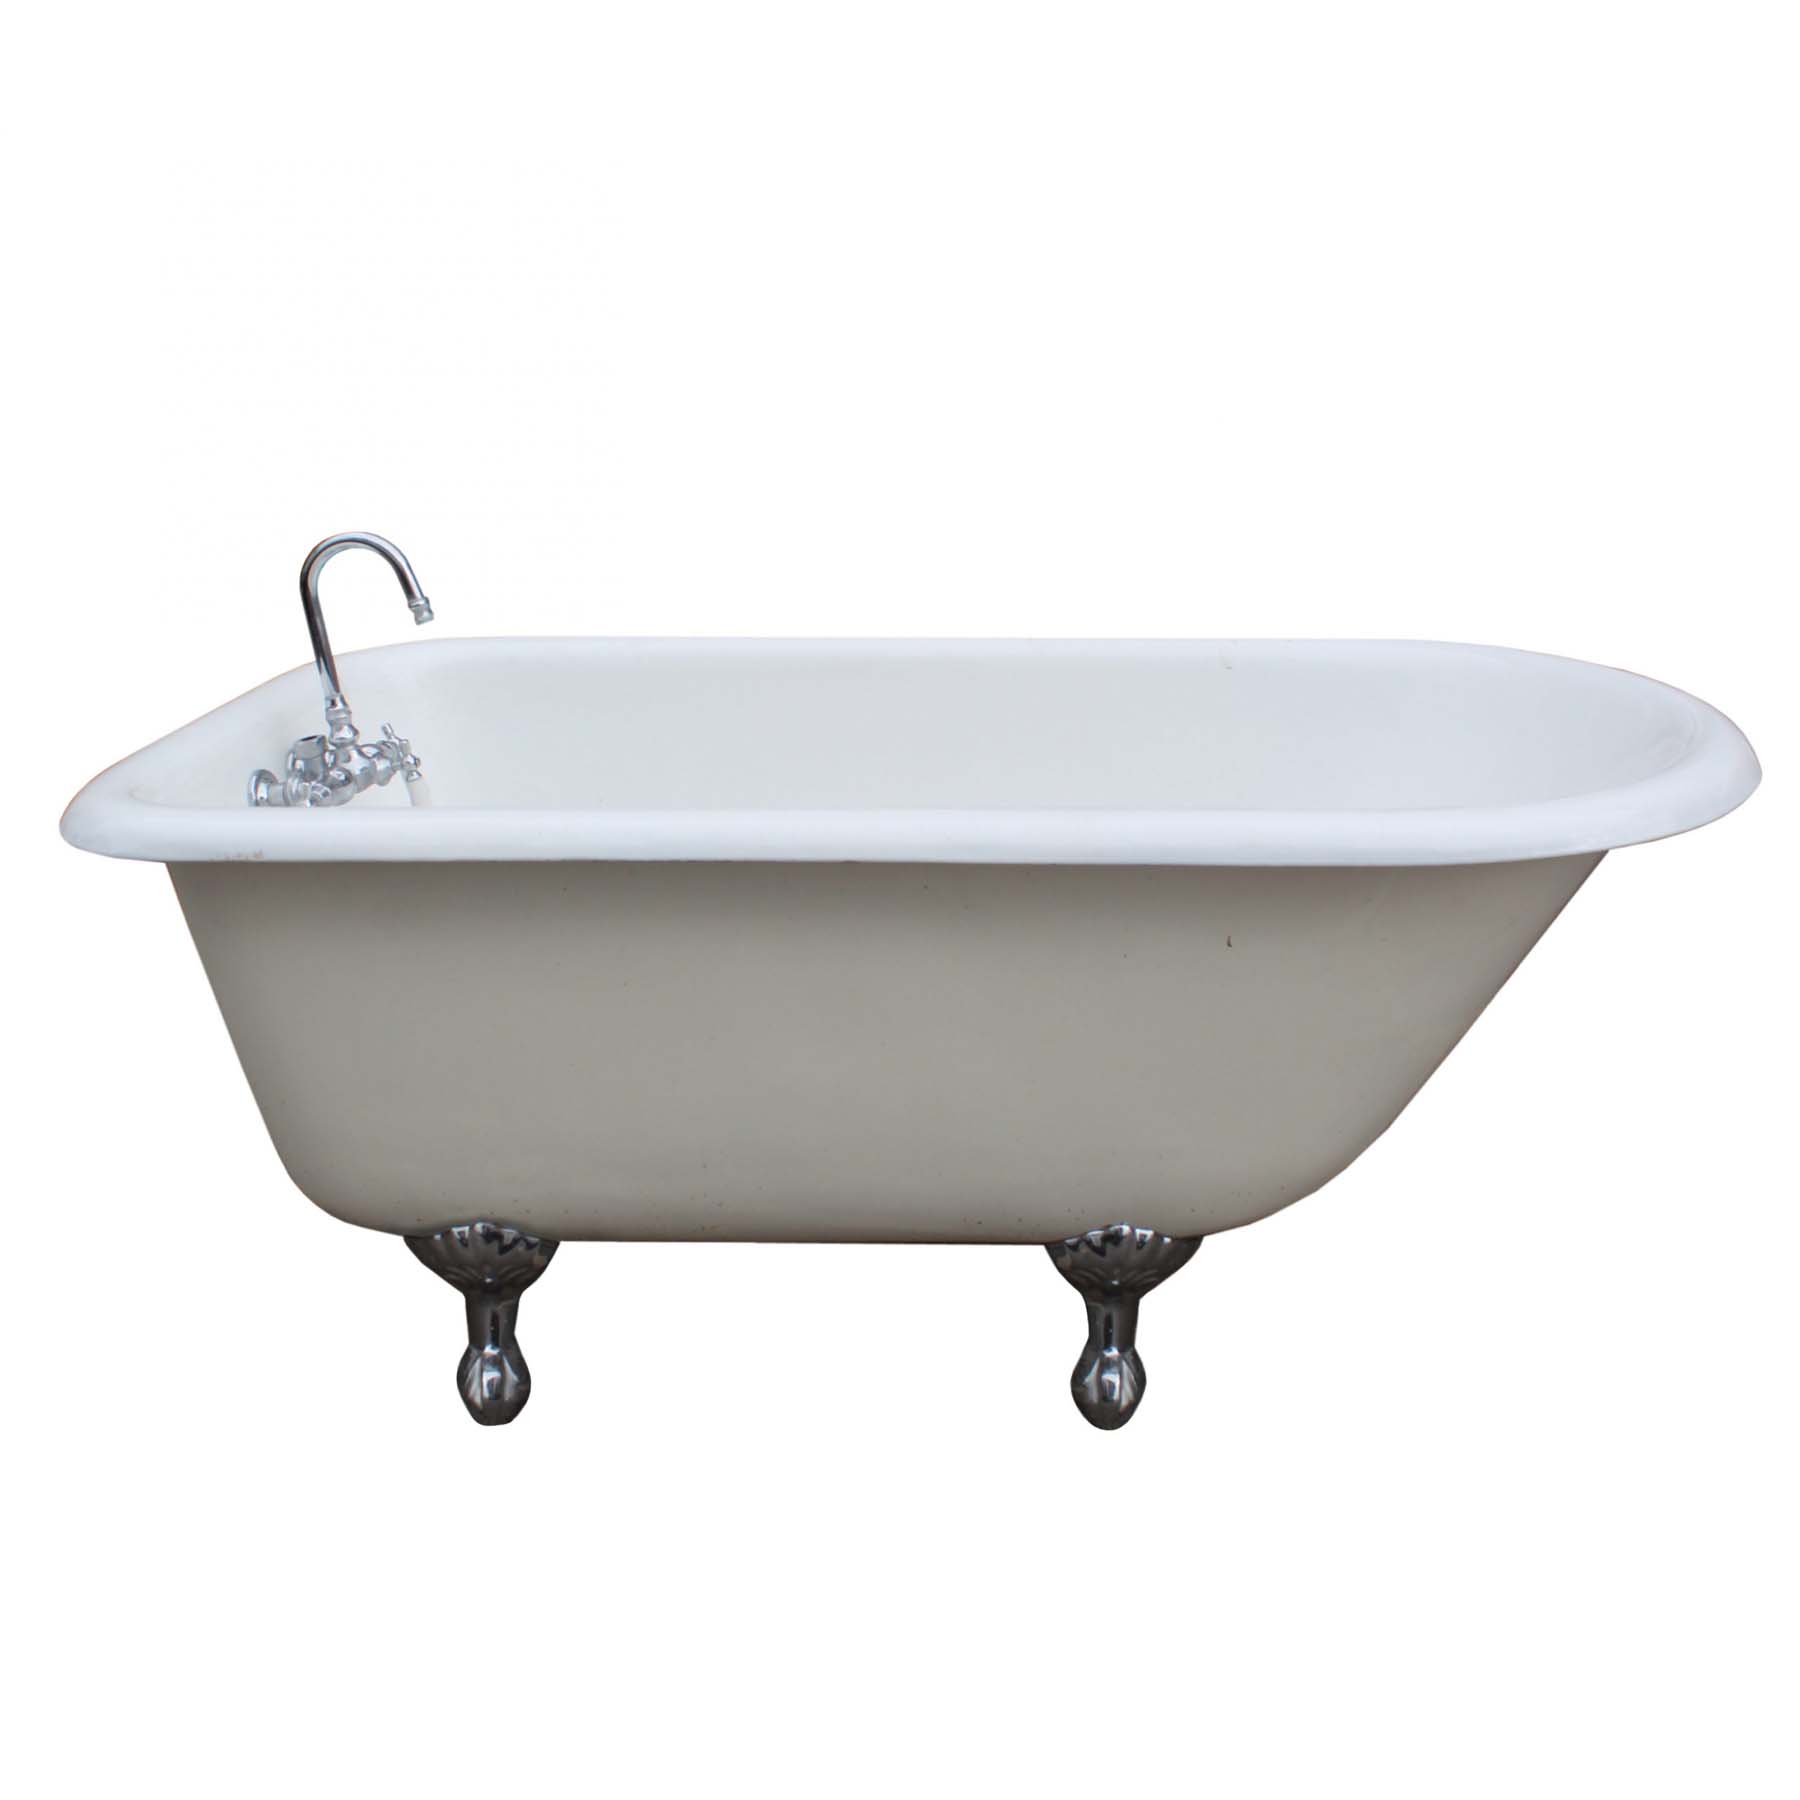 Antique Clawfoot Bath Tub, 5’-0